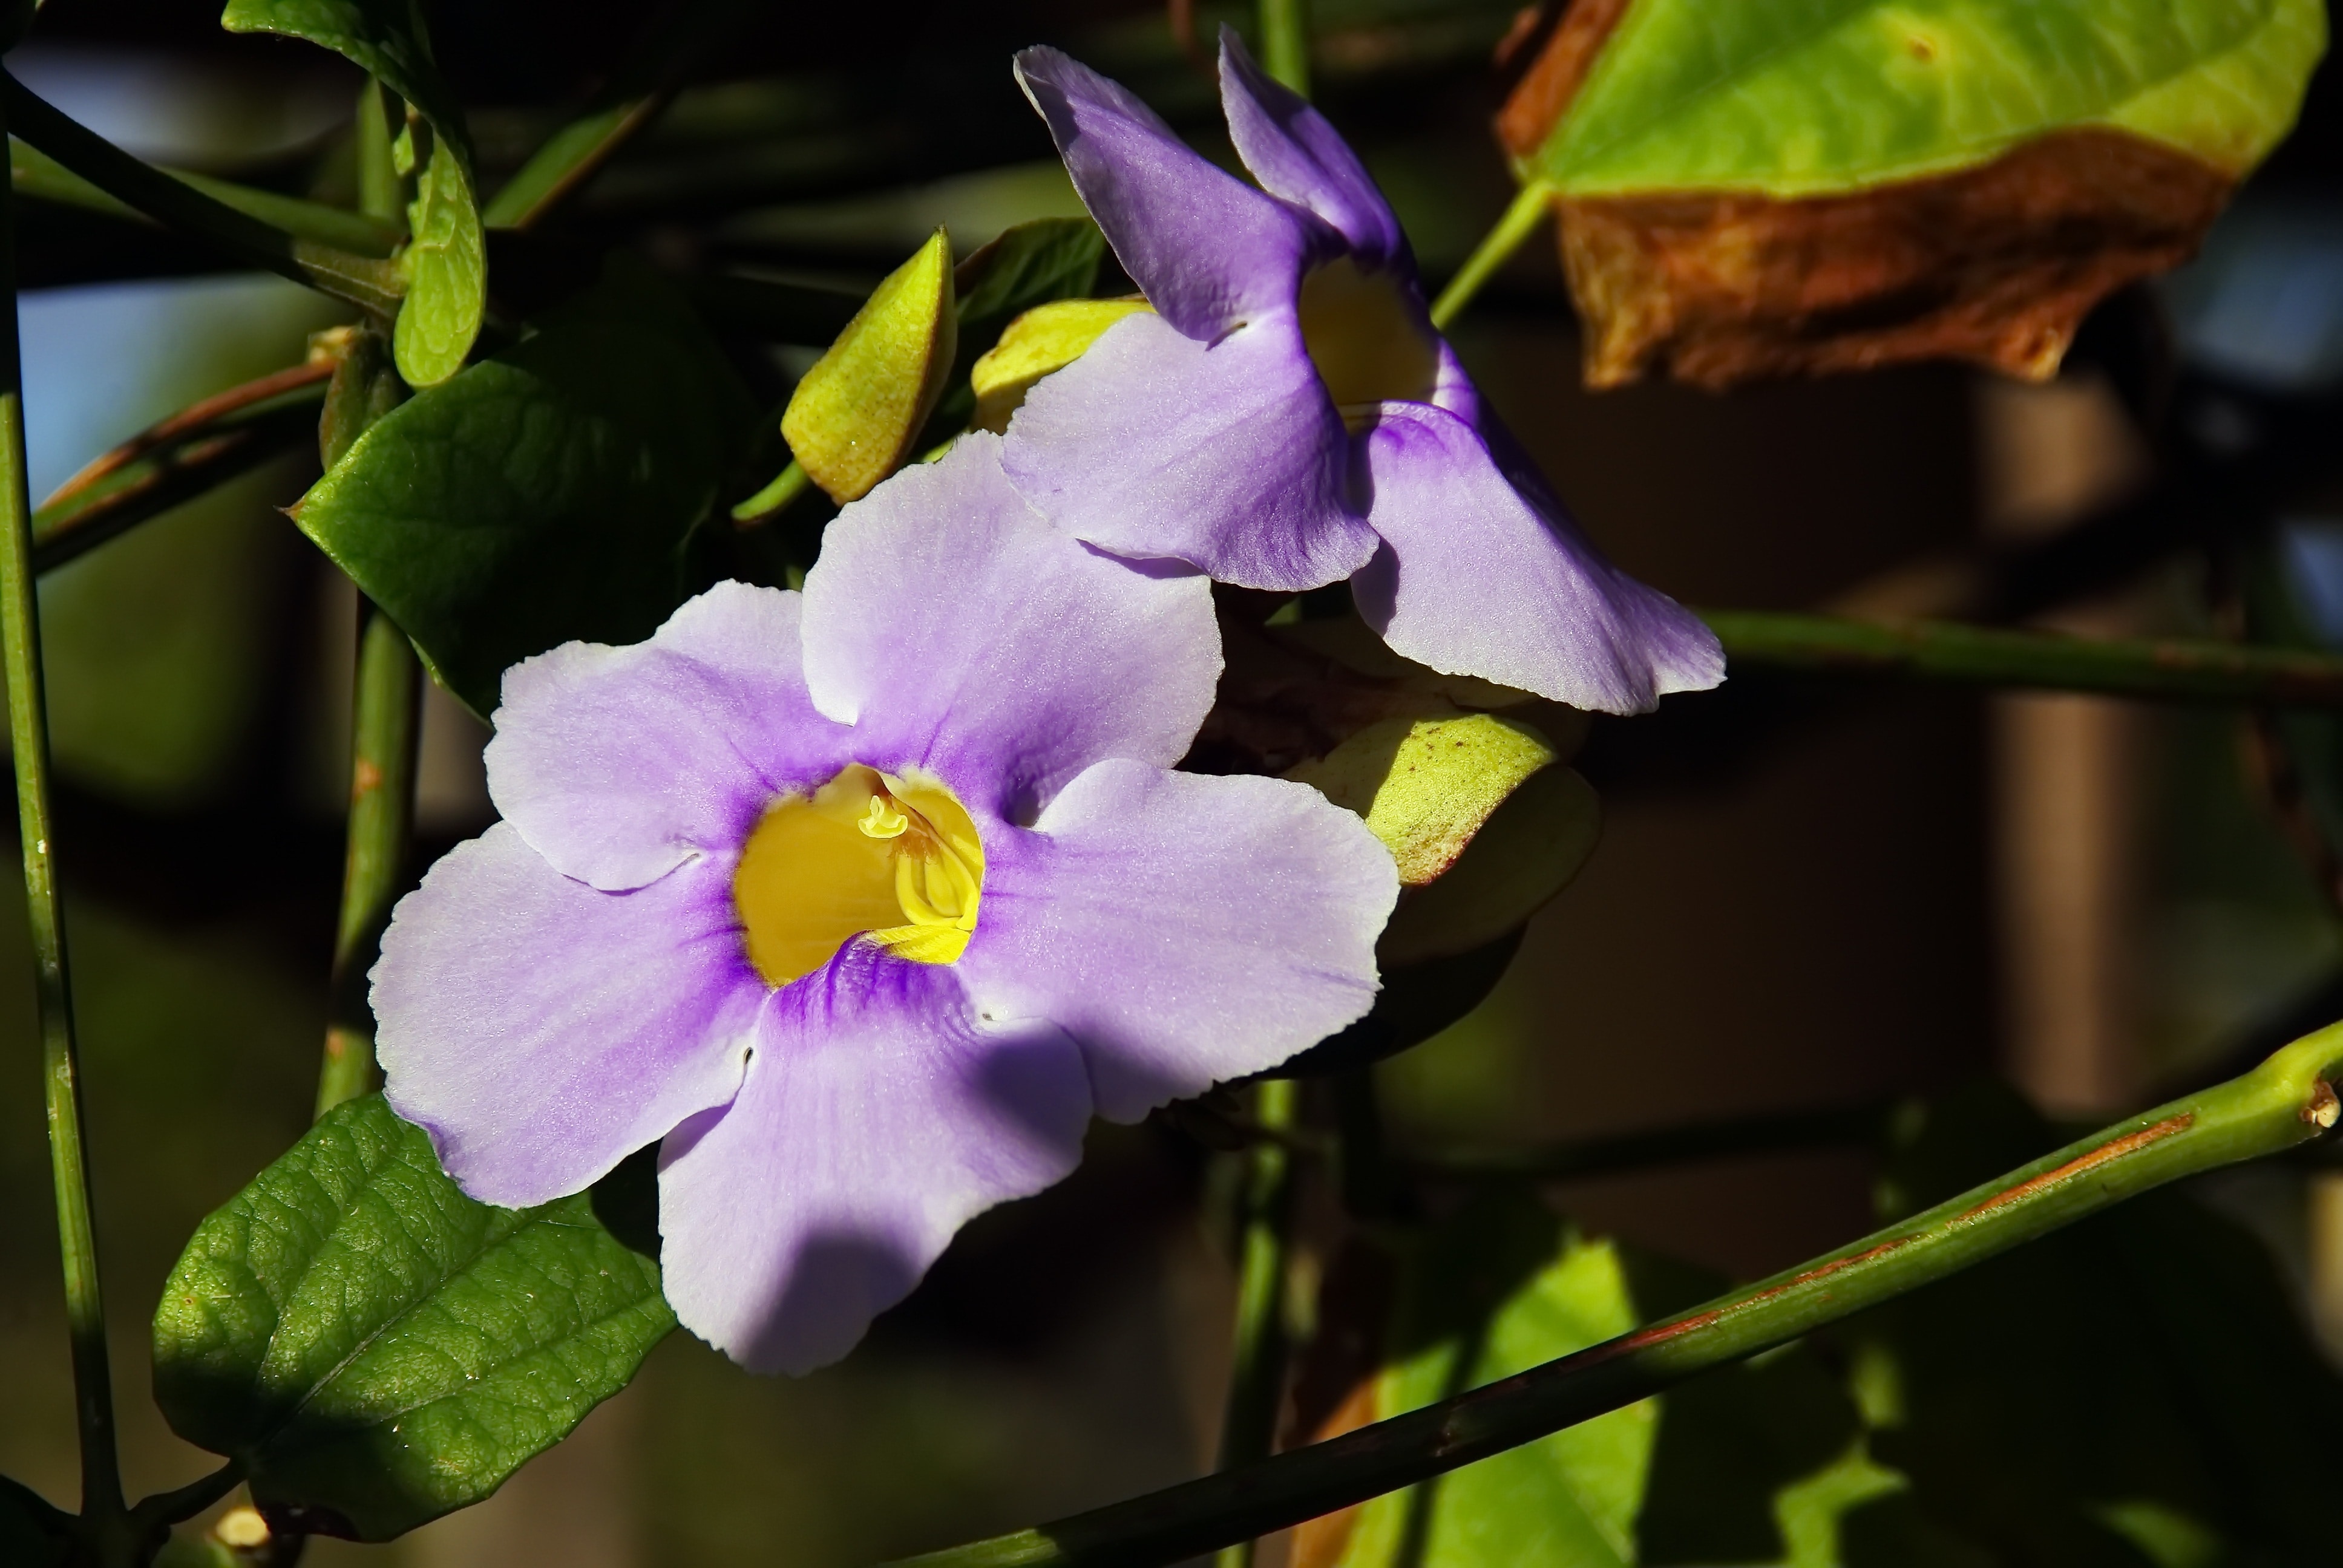 purple 5 petaled flower